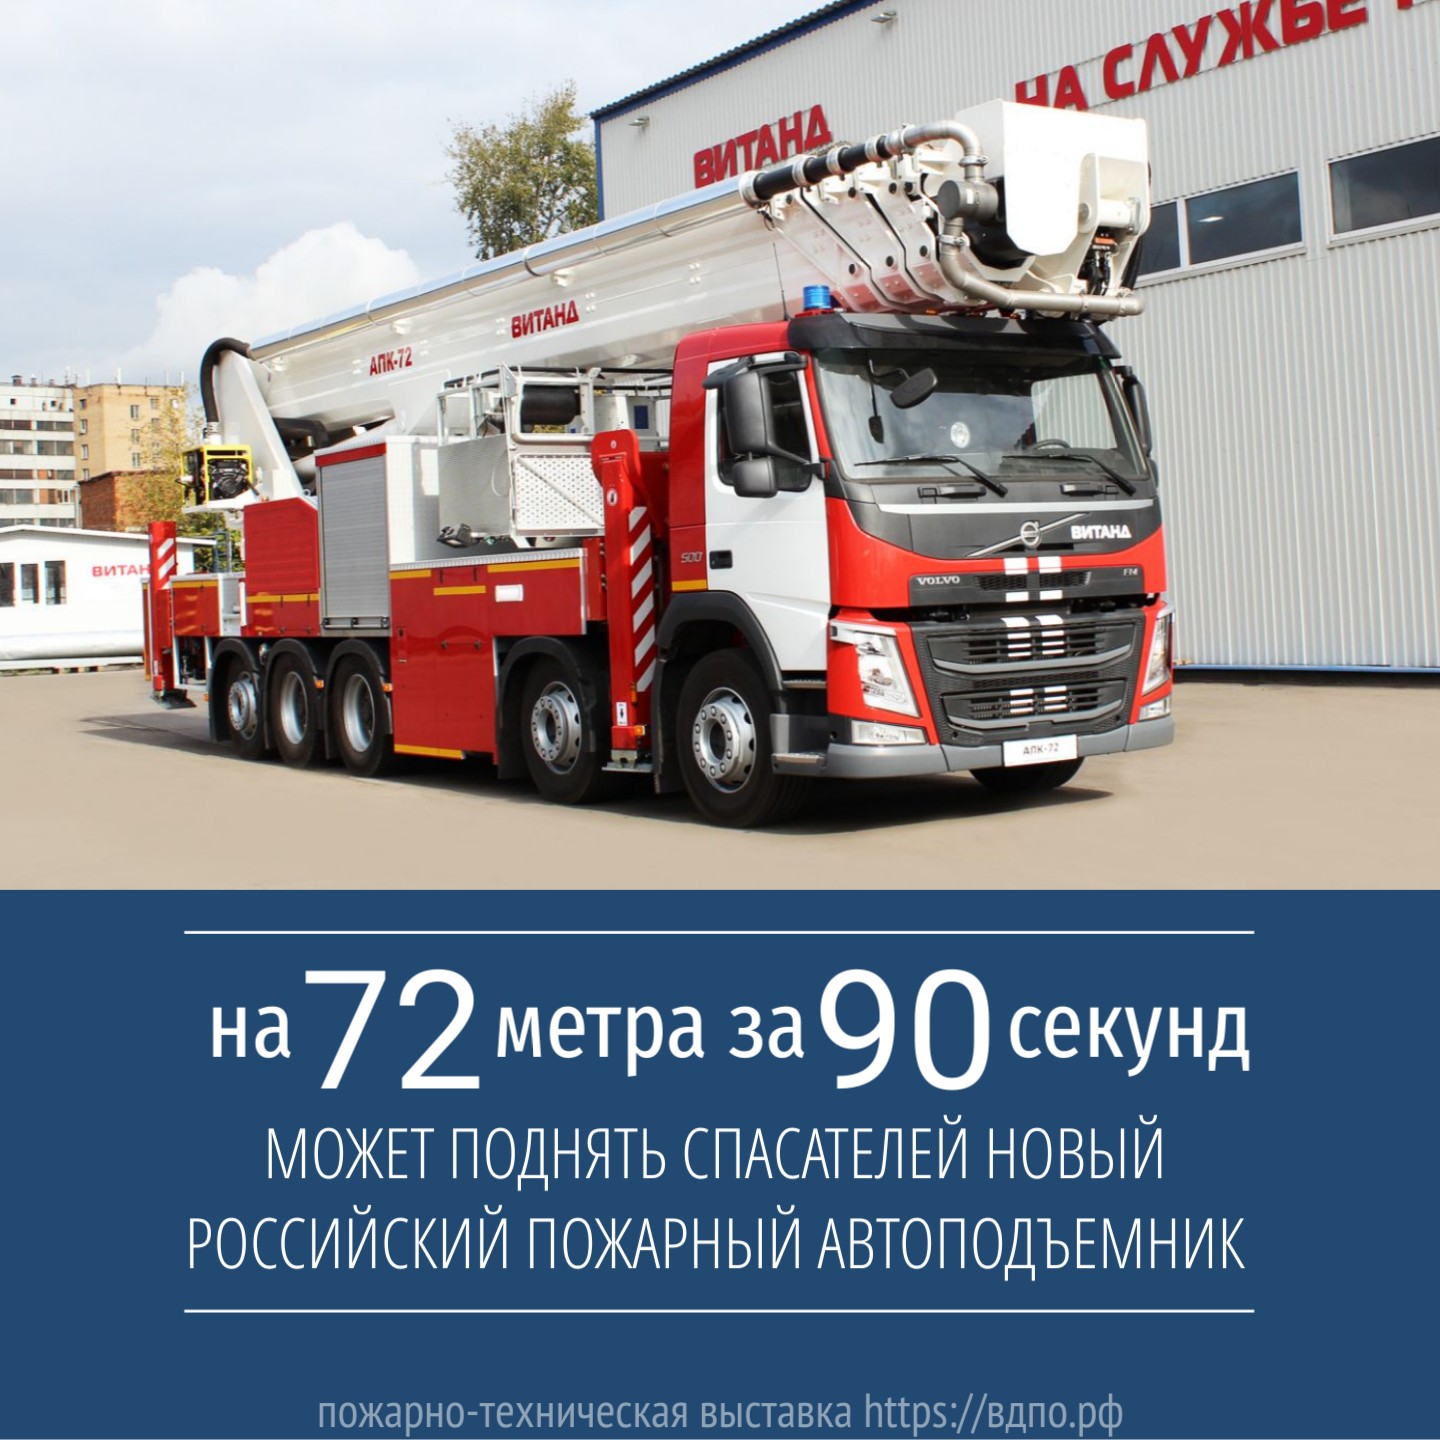 У российских пожарных появился новый высотный пожарный автоподъёмник    АПК-72 – «лестница жизни» длиною в 72 метра  
 Правда, это не совсем......